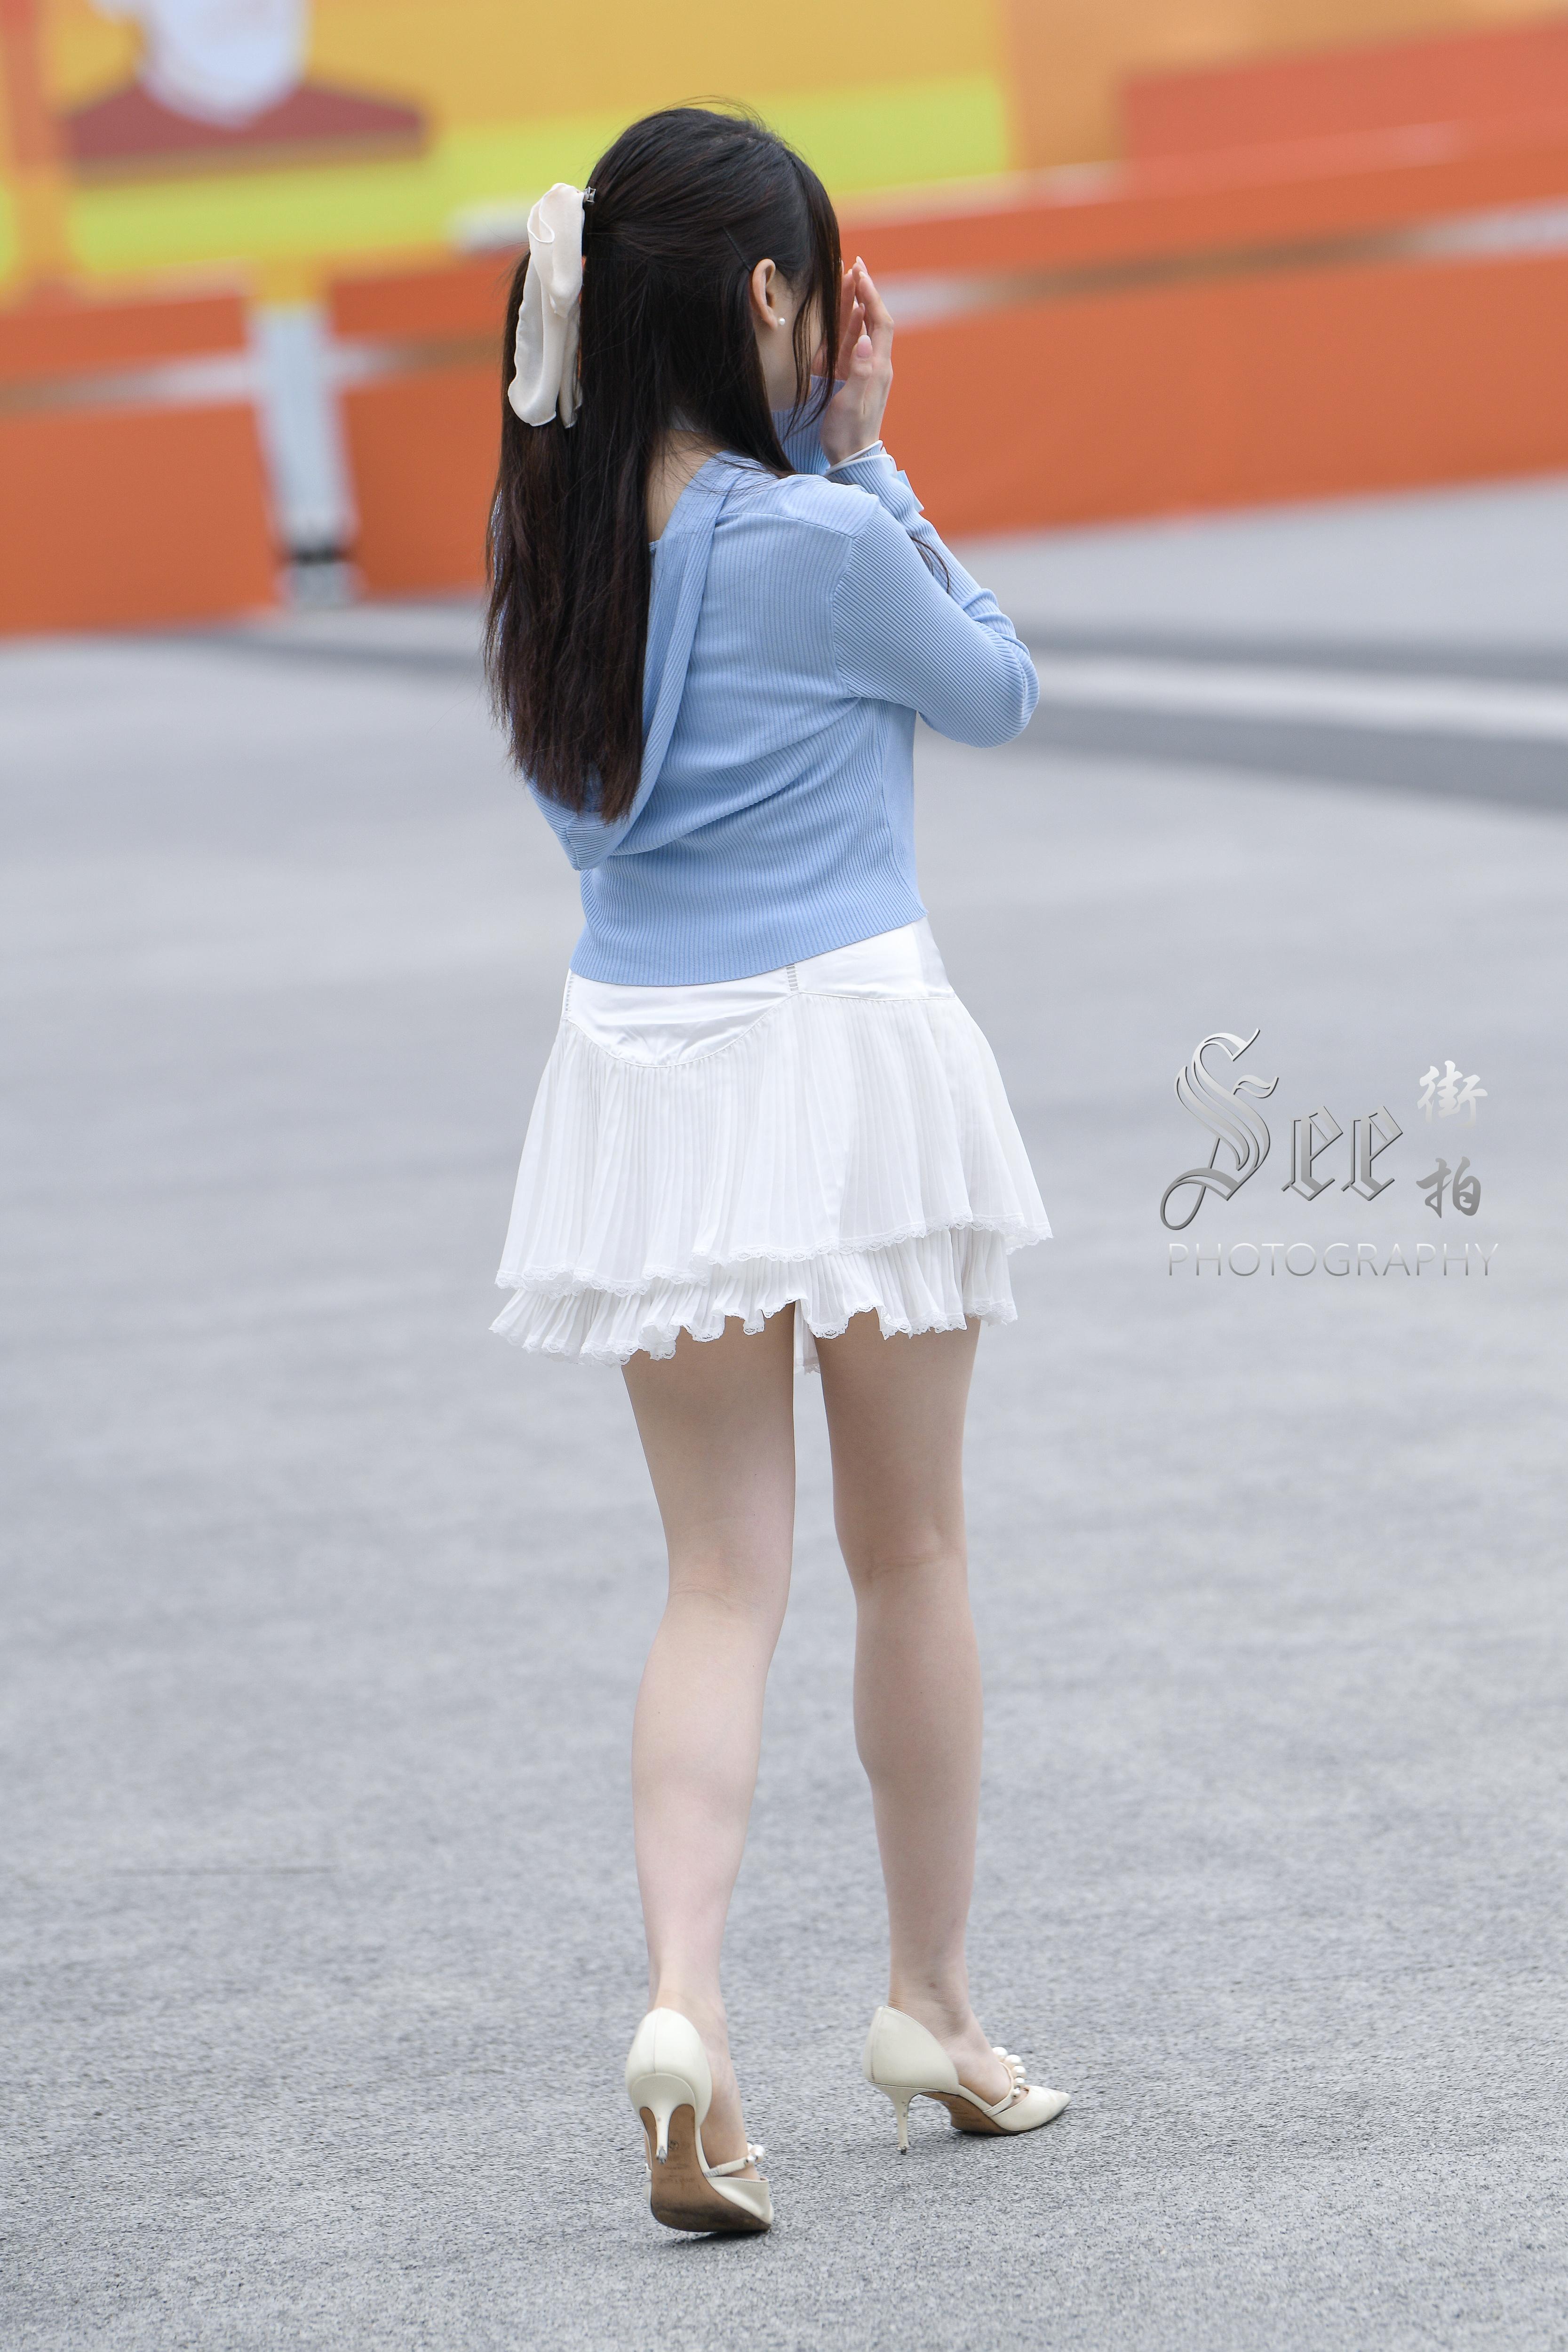 SEE街拍 展会前的阳光少女 蓝色外套加白色短裙清甜可爱美丽,1 (8)